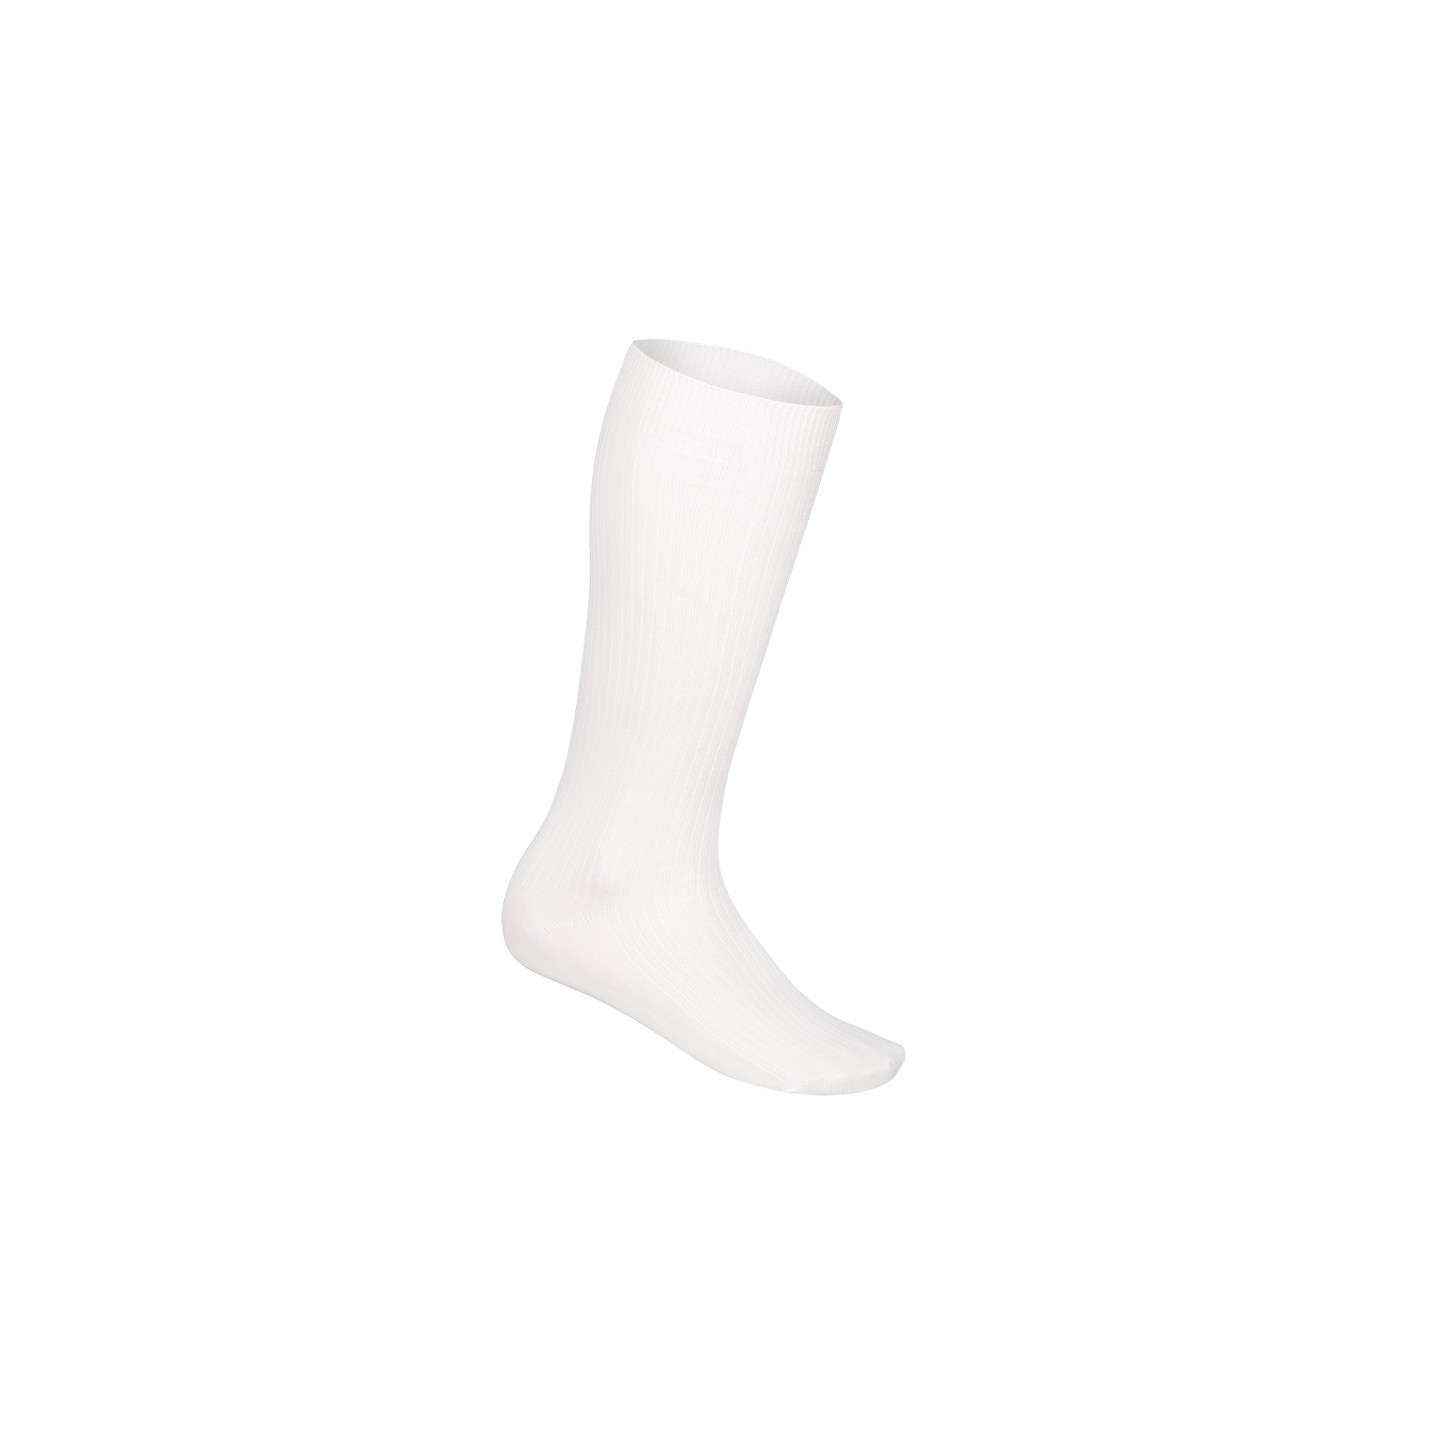 Tiroler kousen heren wit oktoberfest sokken